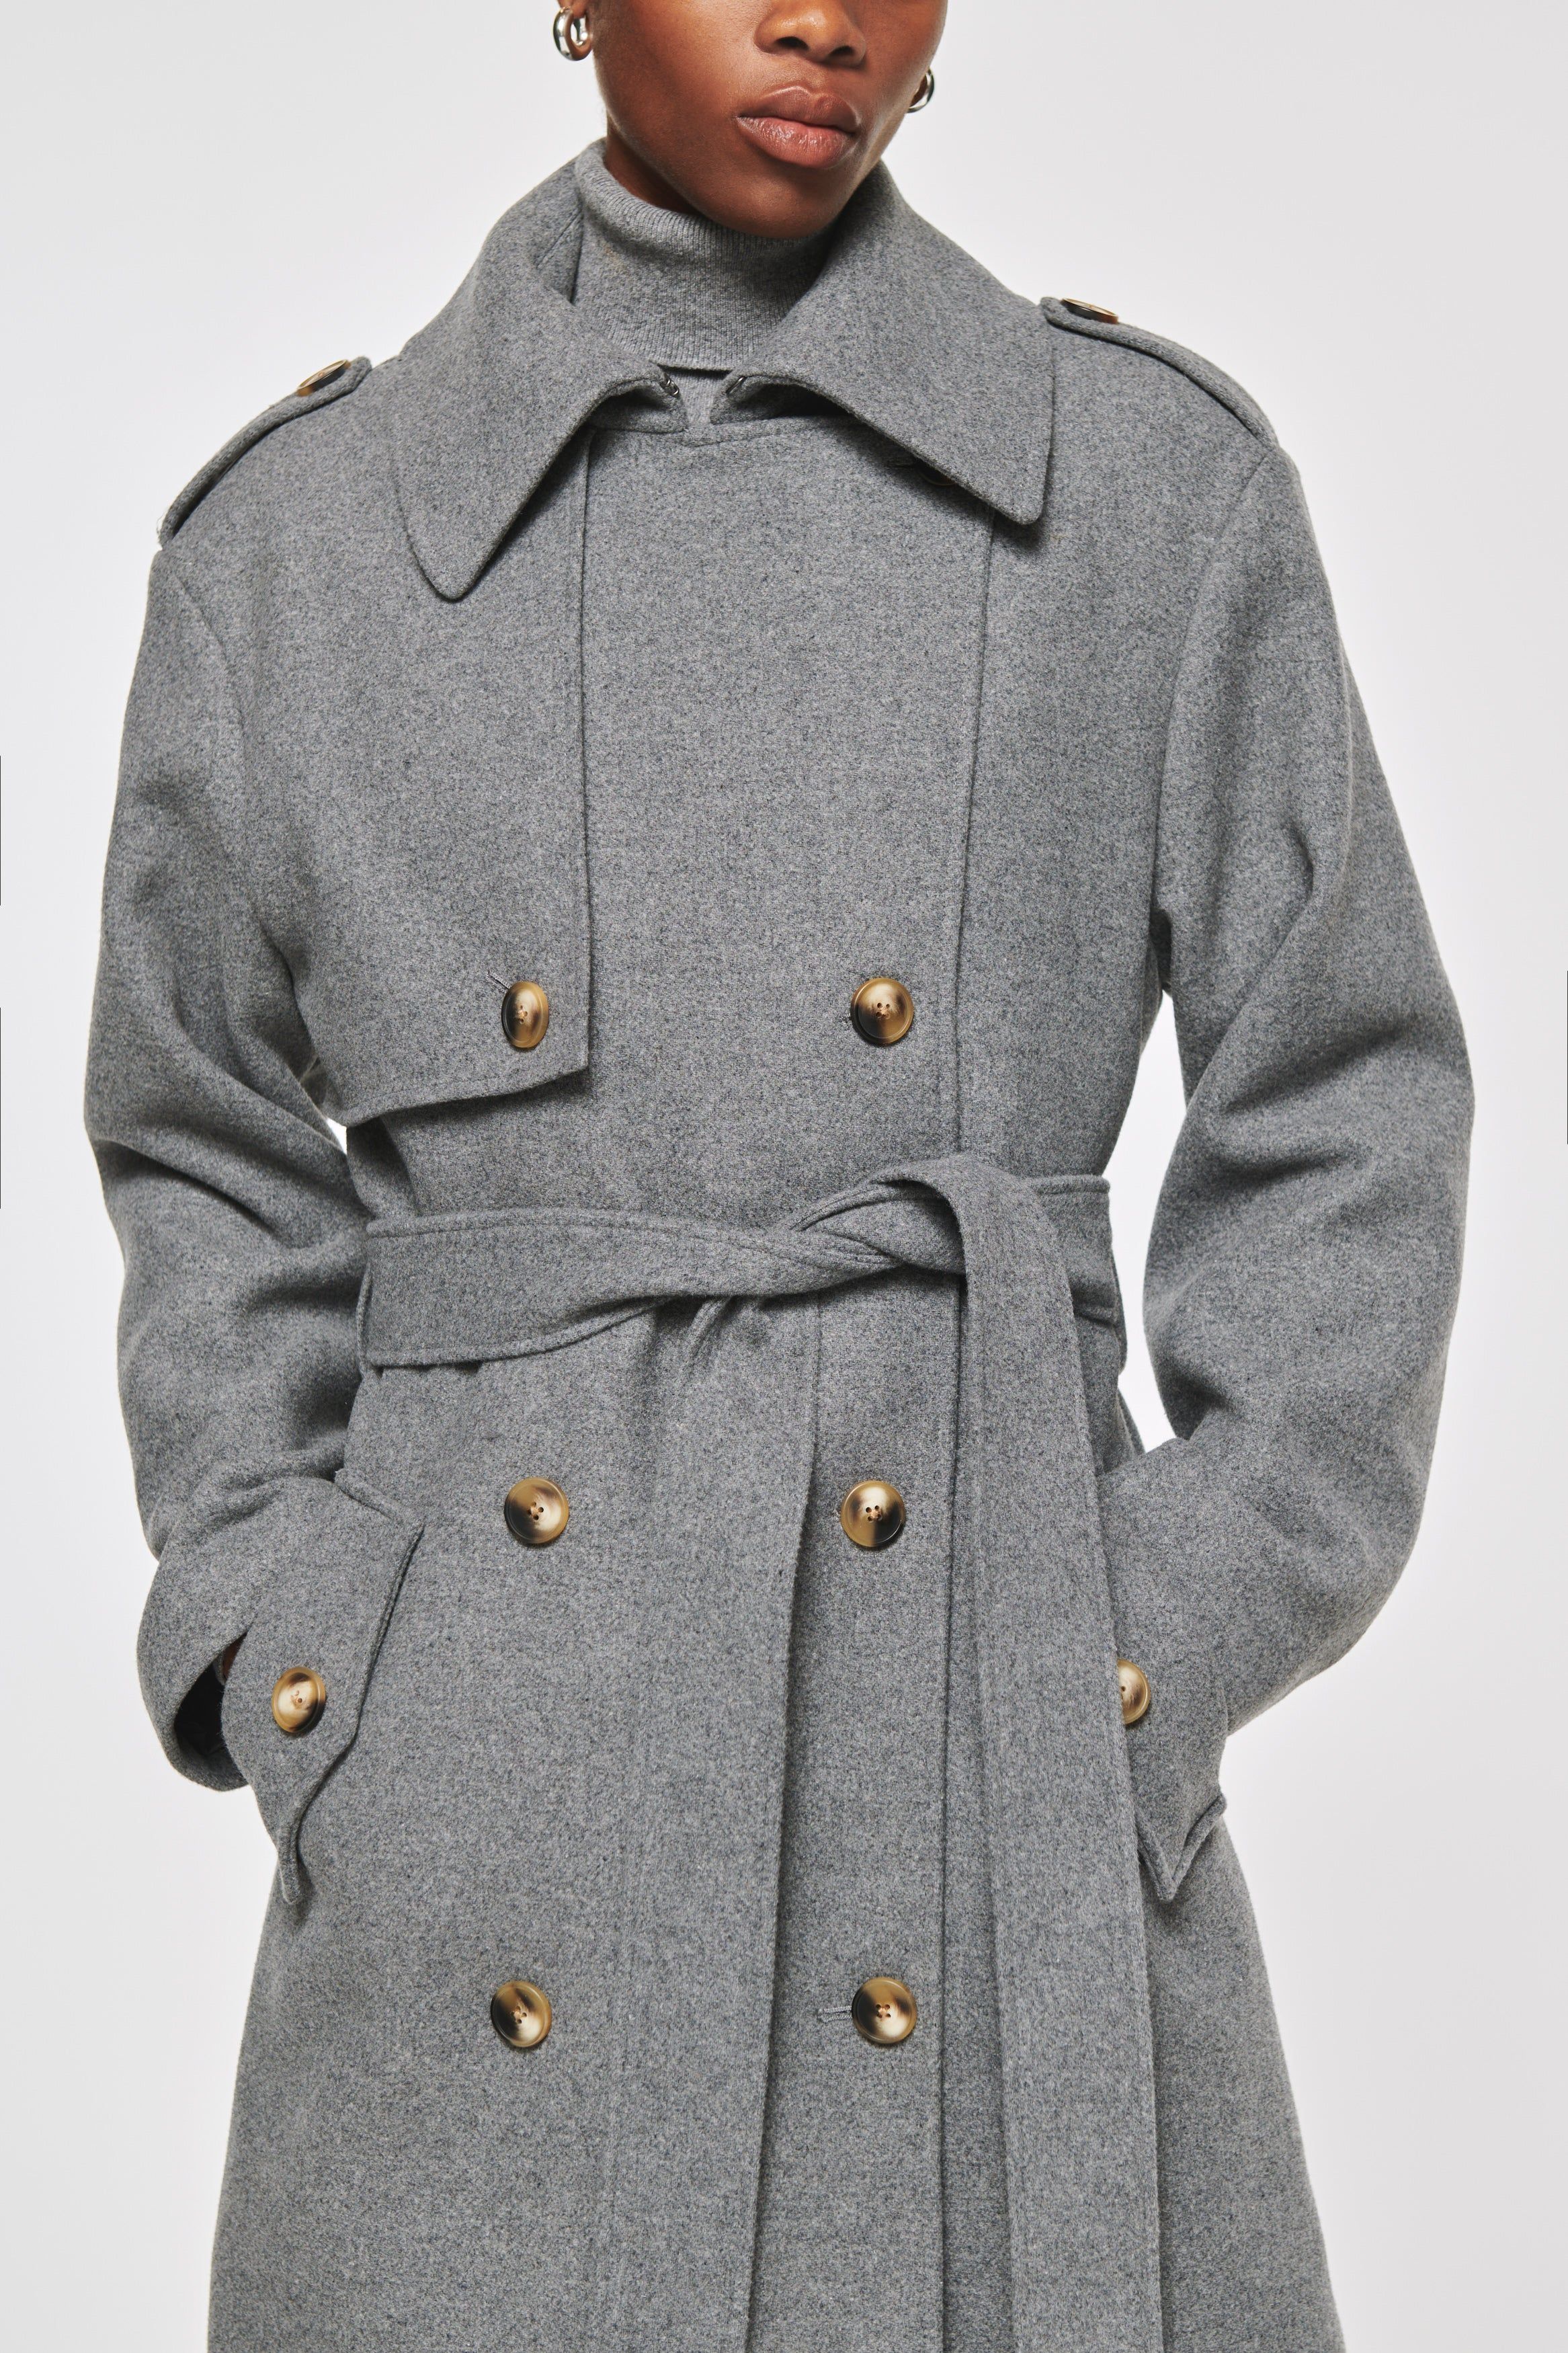 Keller | Wool Trench Coat in Grey | ALIGNE | Aligne UK